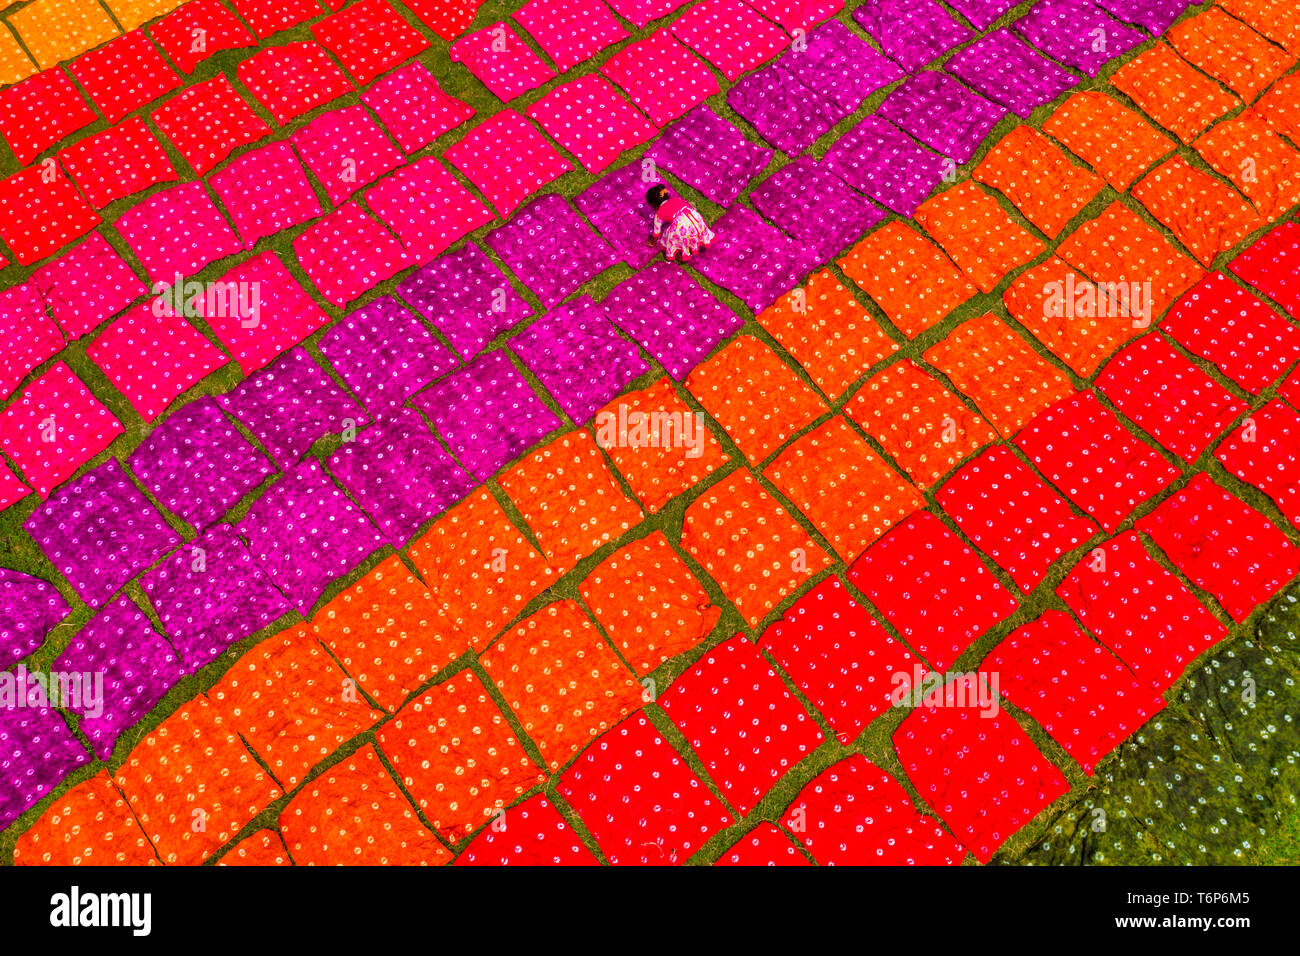 NOTE DU RÉDACTEUR : Image prise avec drone) Ouvriers vu le dépliage des  centaines de mètres de tissu rouge brillant teints fraîchement sur un  terrain dans le cadre du processus de création